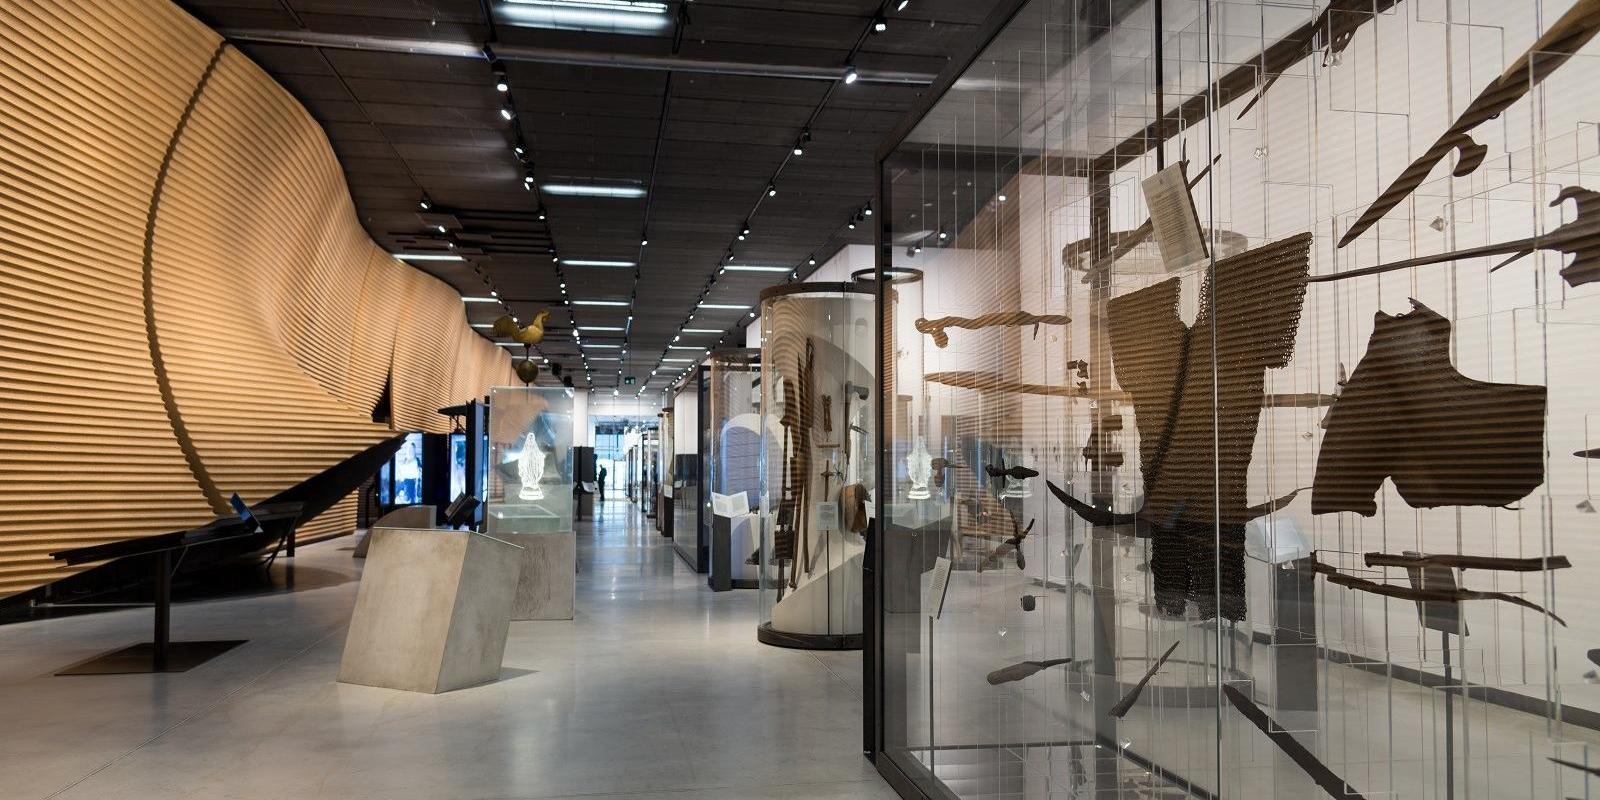 Fotogrāfijā redzami Igaunijas Nacionālā muzeja pastāvīgās izstādes "Tikšanās" eksponāti - bruņas un ieroči